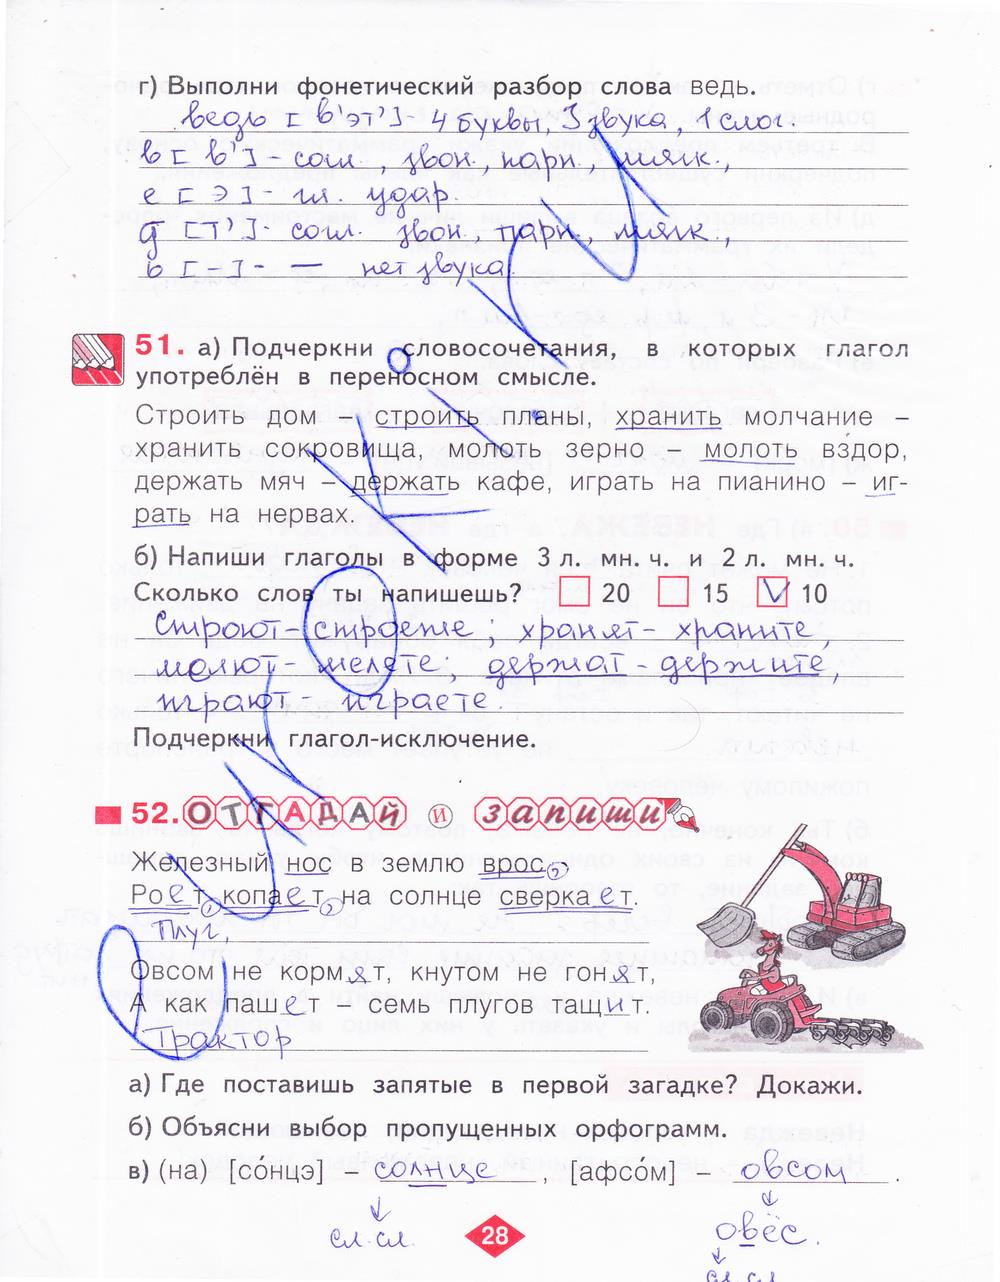 гдз 4 класс рабочая тетрадь часть 3 страница 28 русский язык Нечаева, Воскресенская